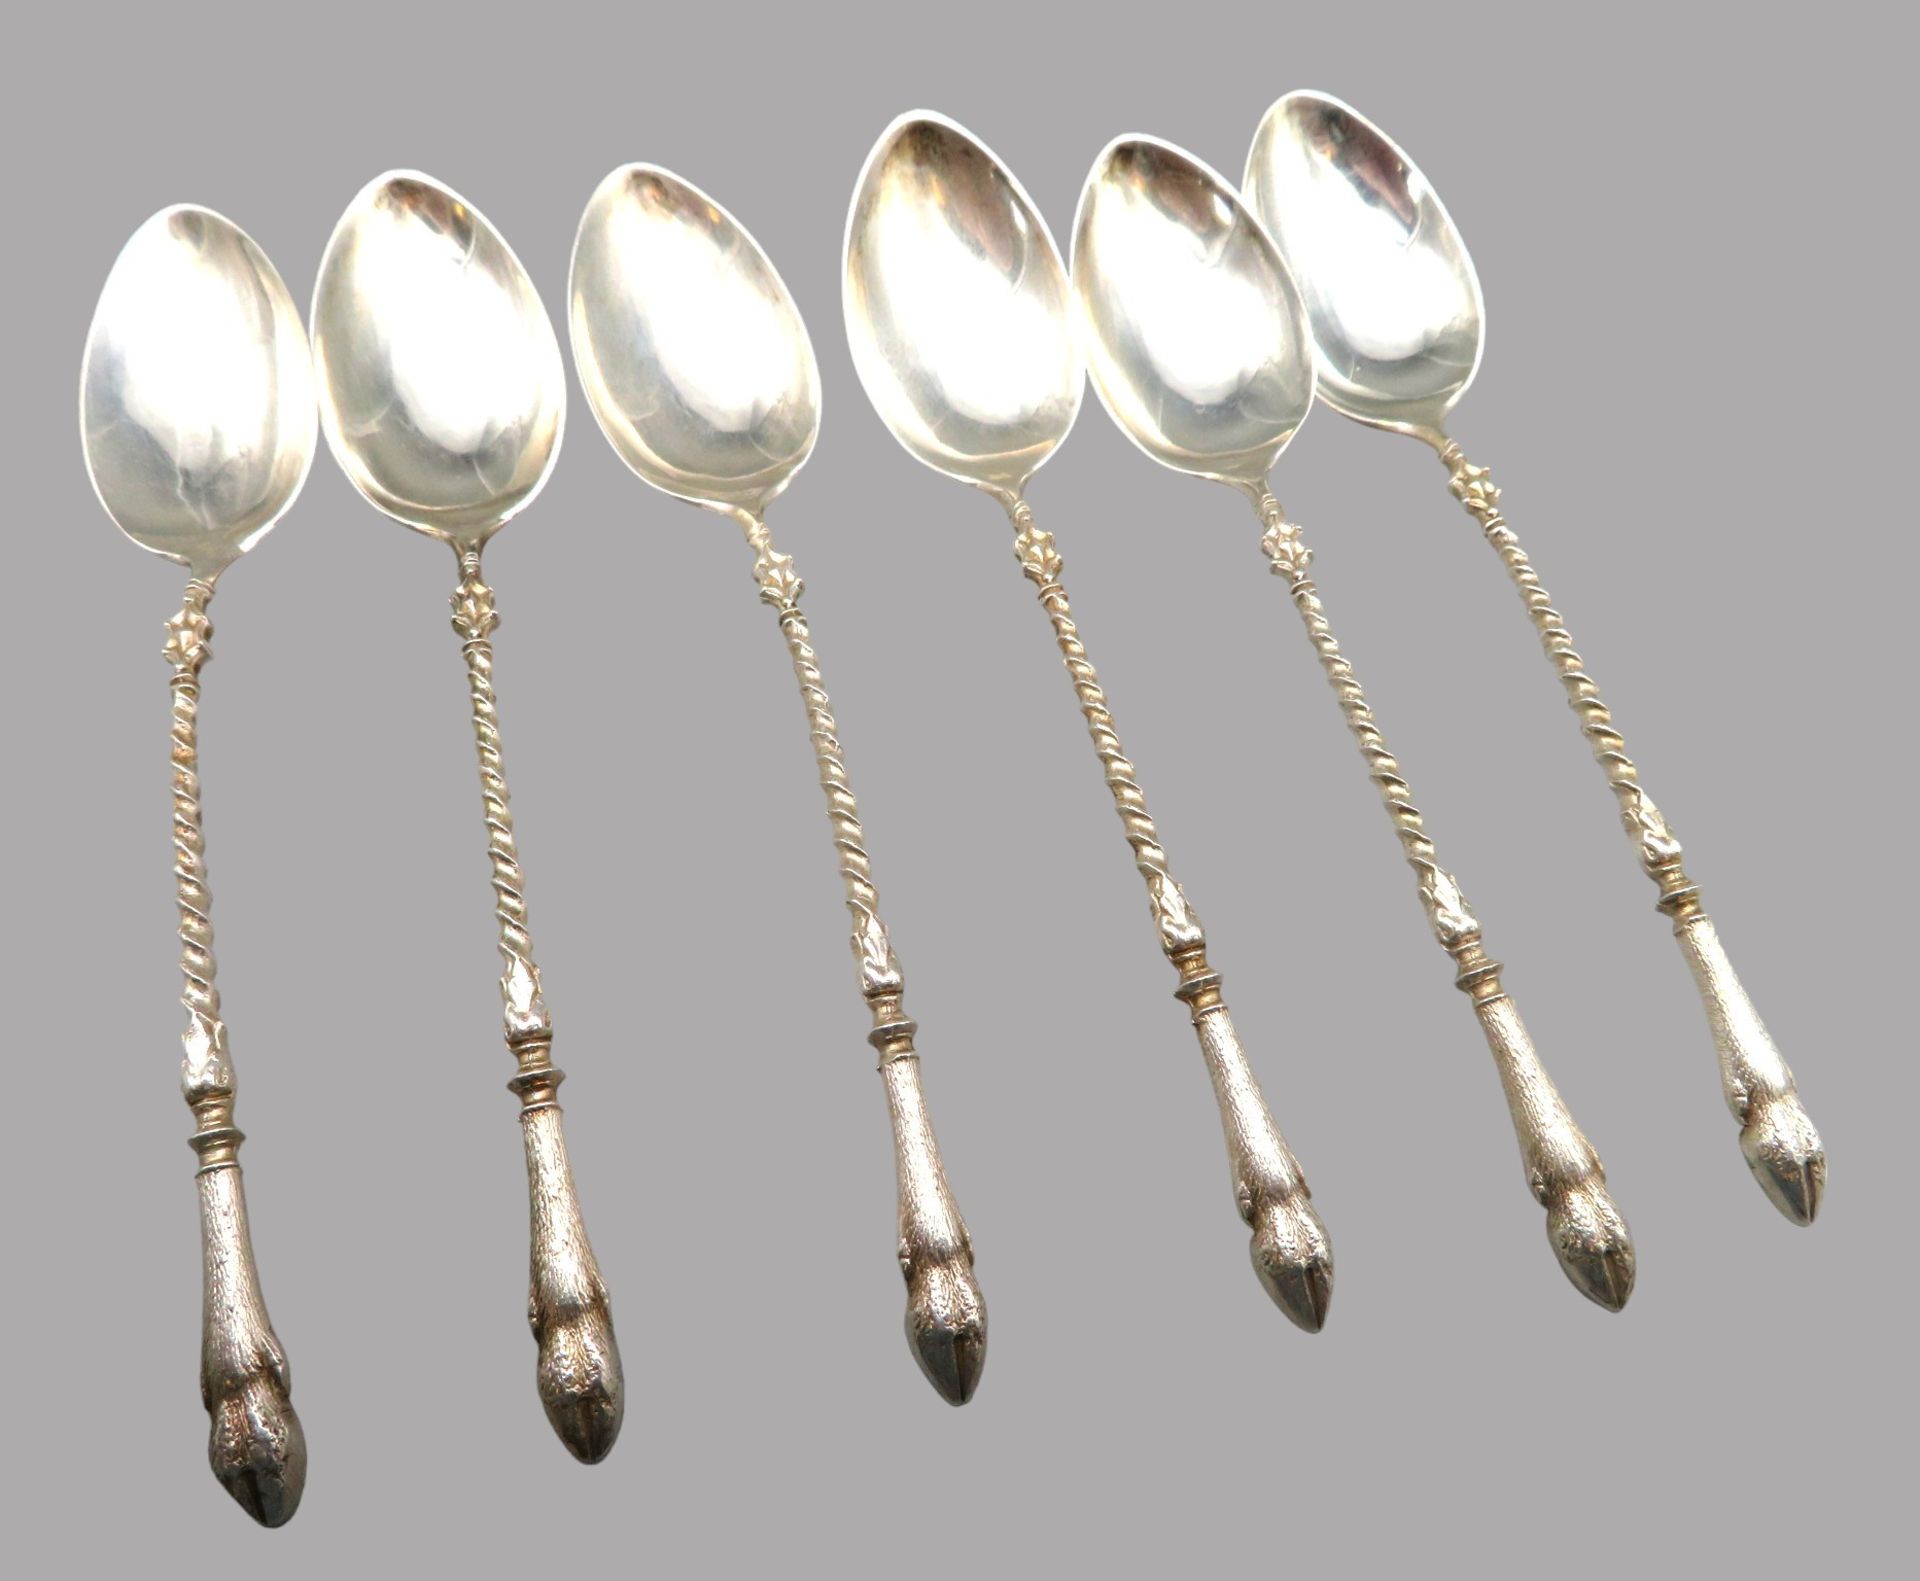 6 Teelöffel, 19. Jahrhundert, Silber 835/000, punziert, 44,03 g, gedrehter Griff, endend in Ziegenf